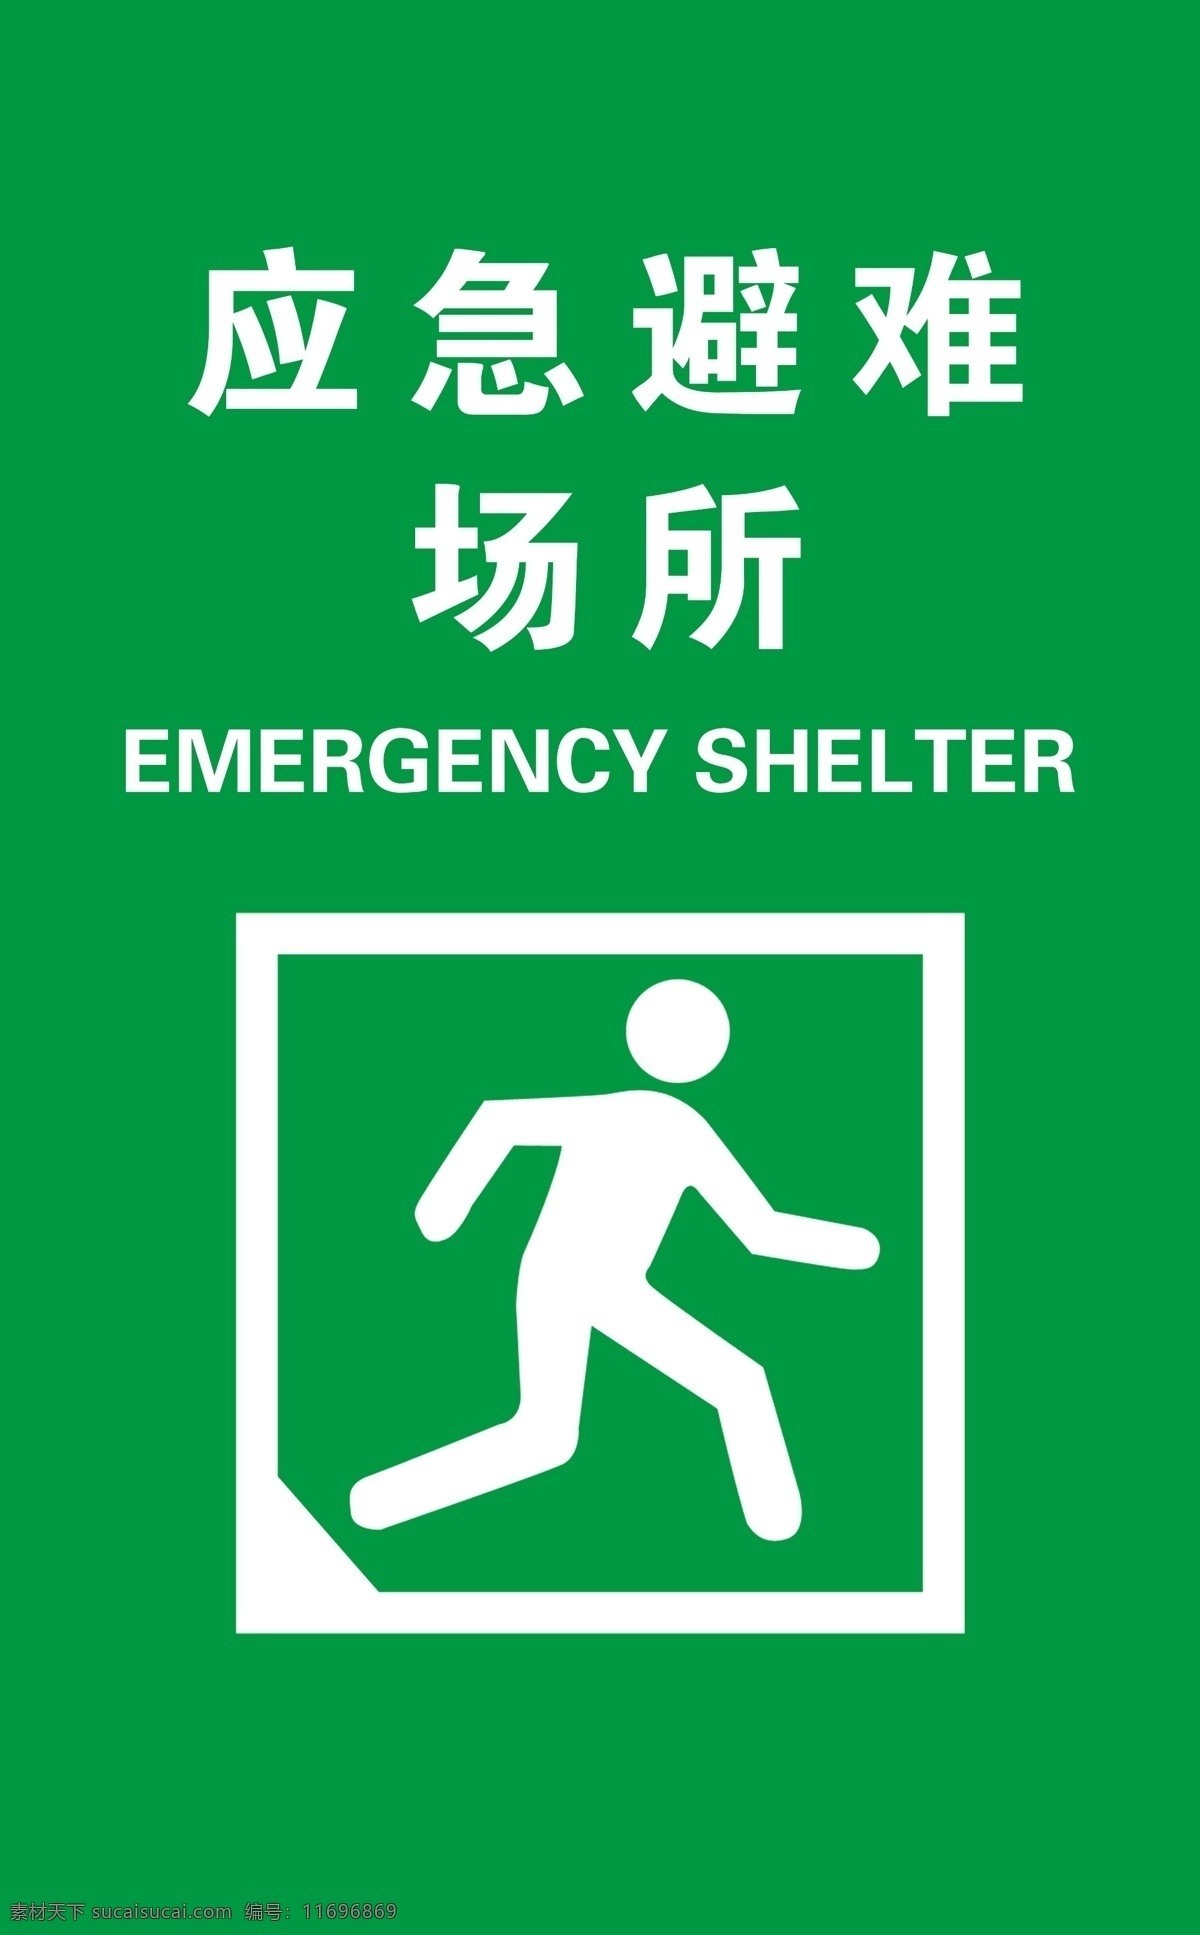 应急避难场所 避难场所指示 避难指示牌 应急避难 避难场所